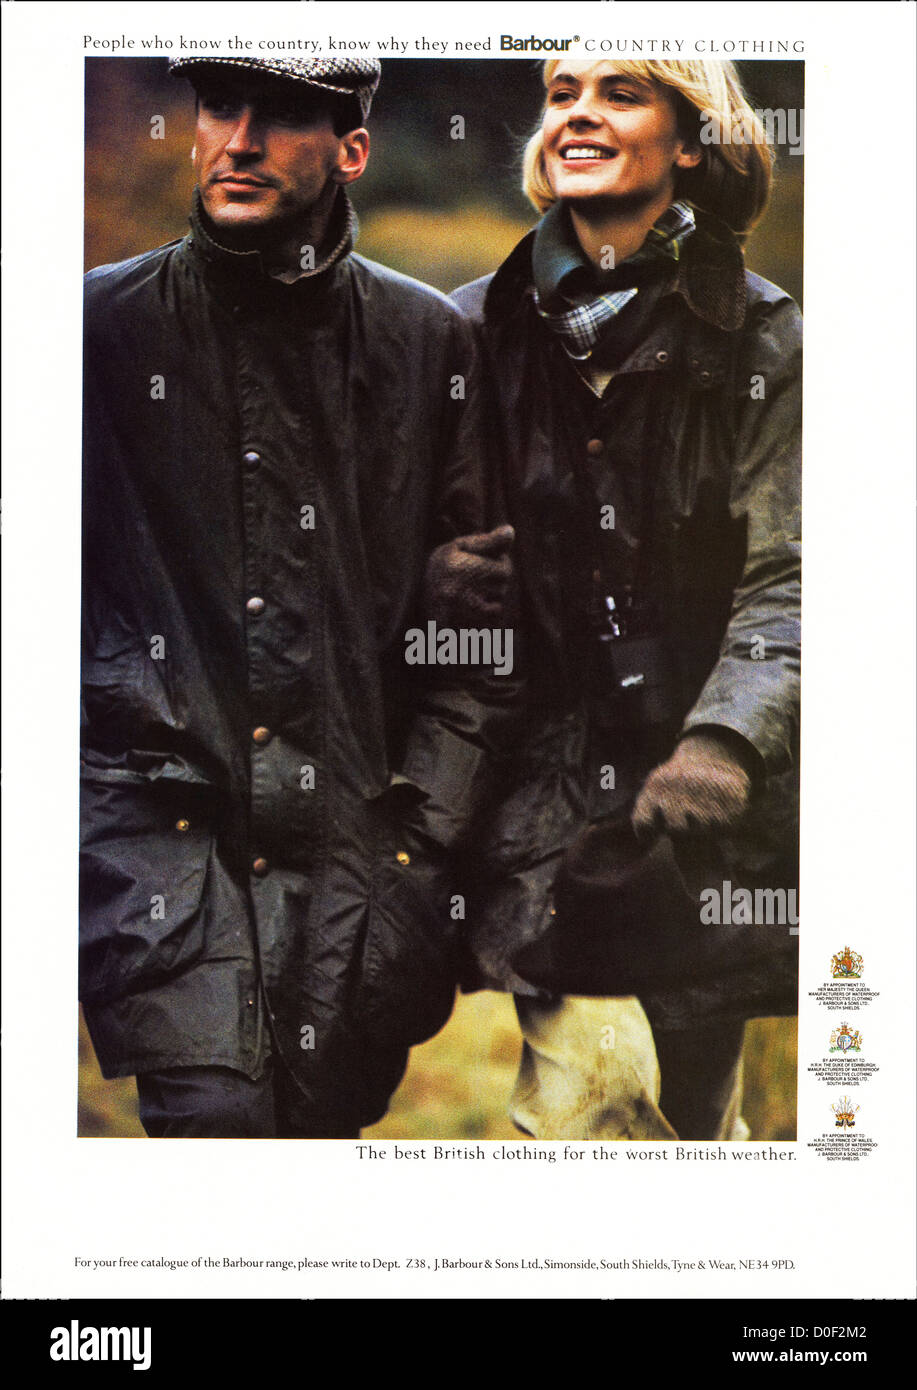 Original der 1980er Jahre Printwerbung aus englischen Verbraucher Magazin Werbung  Barbour Land Kleidung Stockfotografie - Alamy